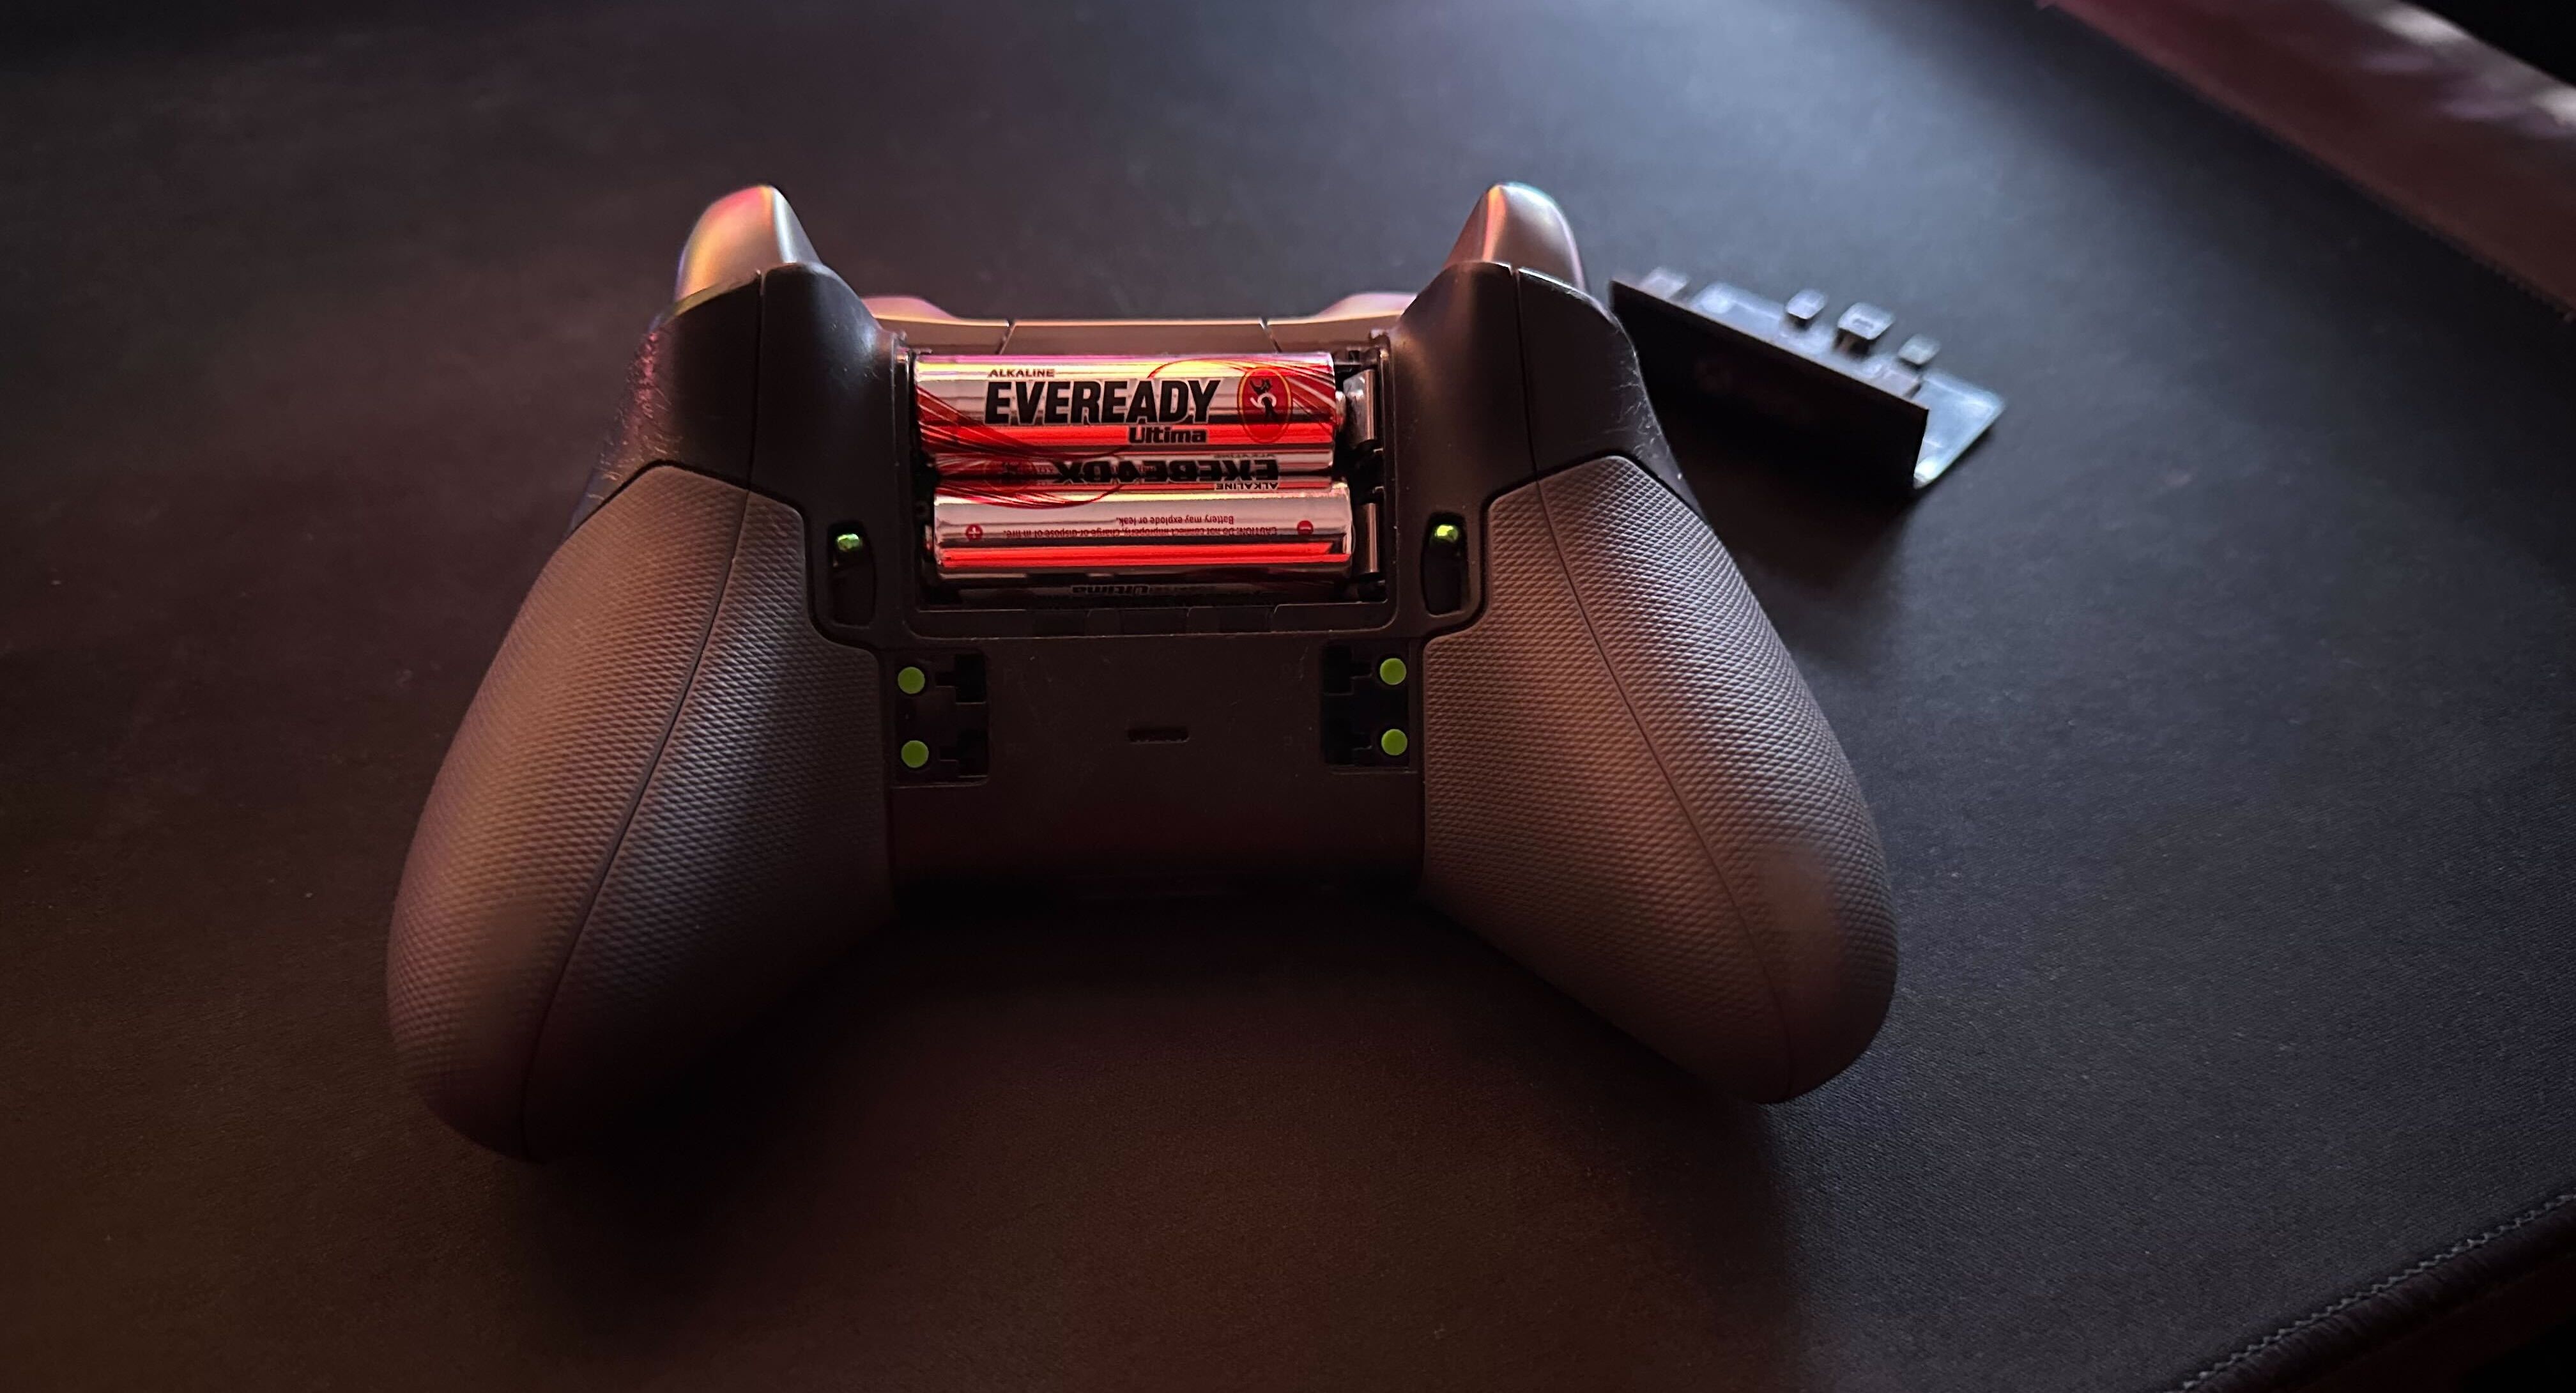 Batteries inside an Xbox controller